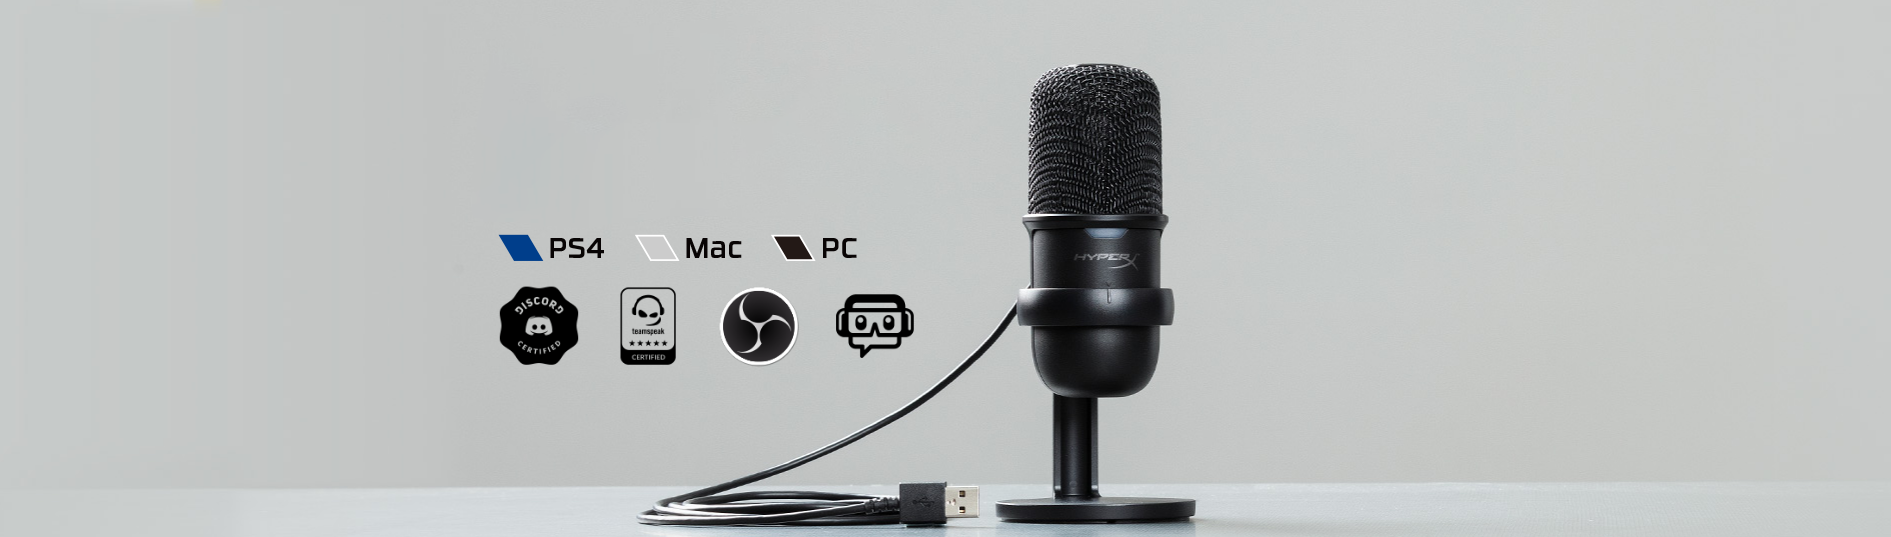 Microphone Kingston HyperX Solocast - Standalone Microphone HMIS1X-XX-BK/G có thể tương thích với nhiều thiết bị